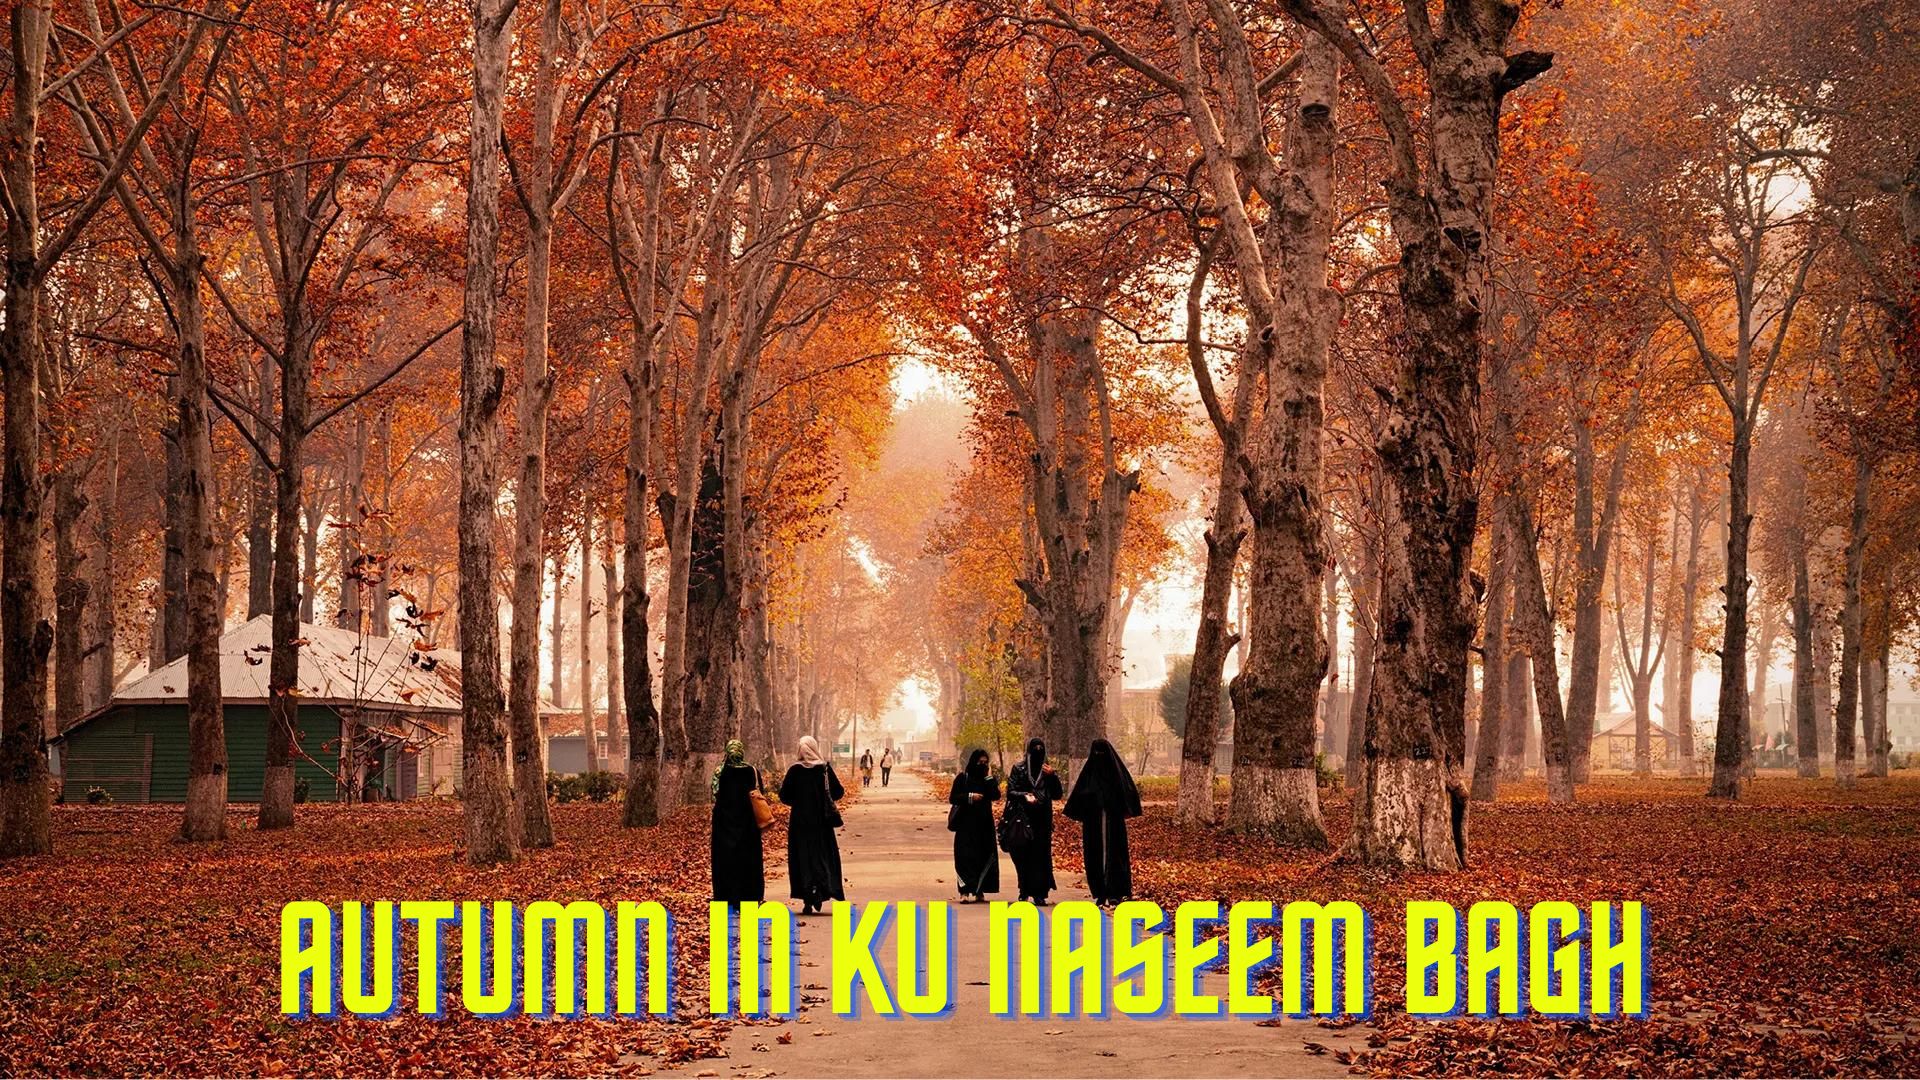 Autumn in Naseem Bagh Kashmir university Srinagar by Kashmirani